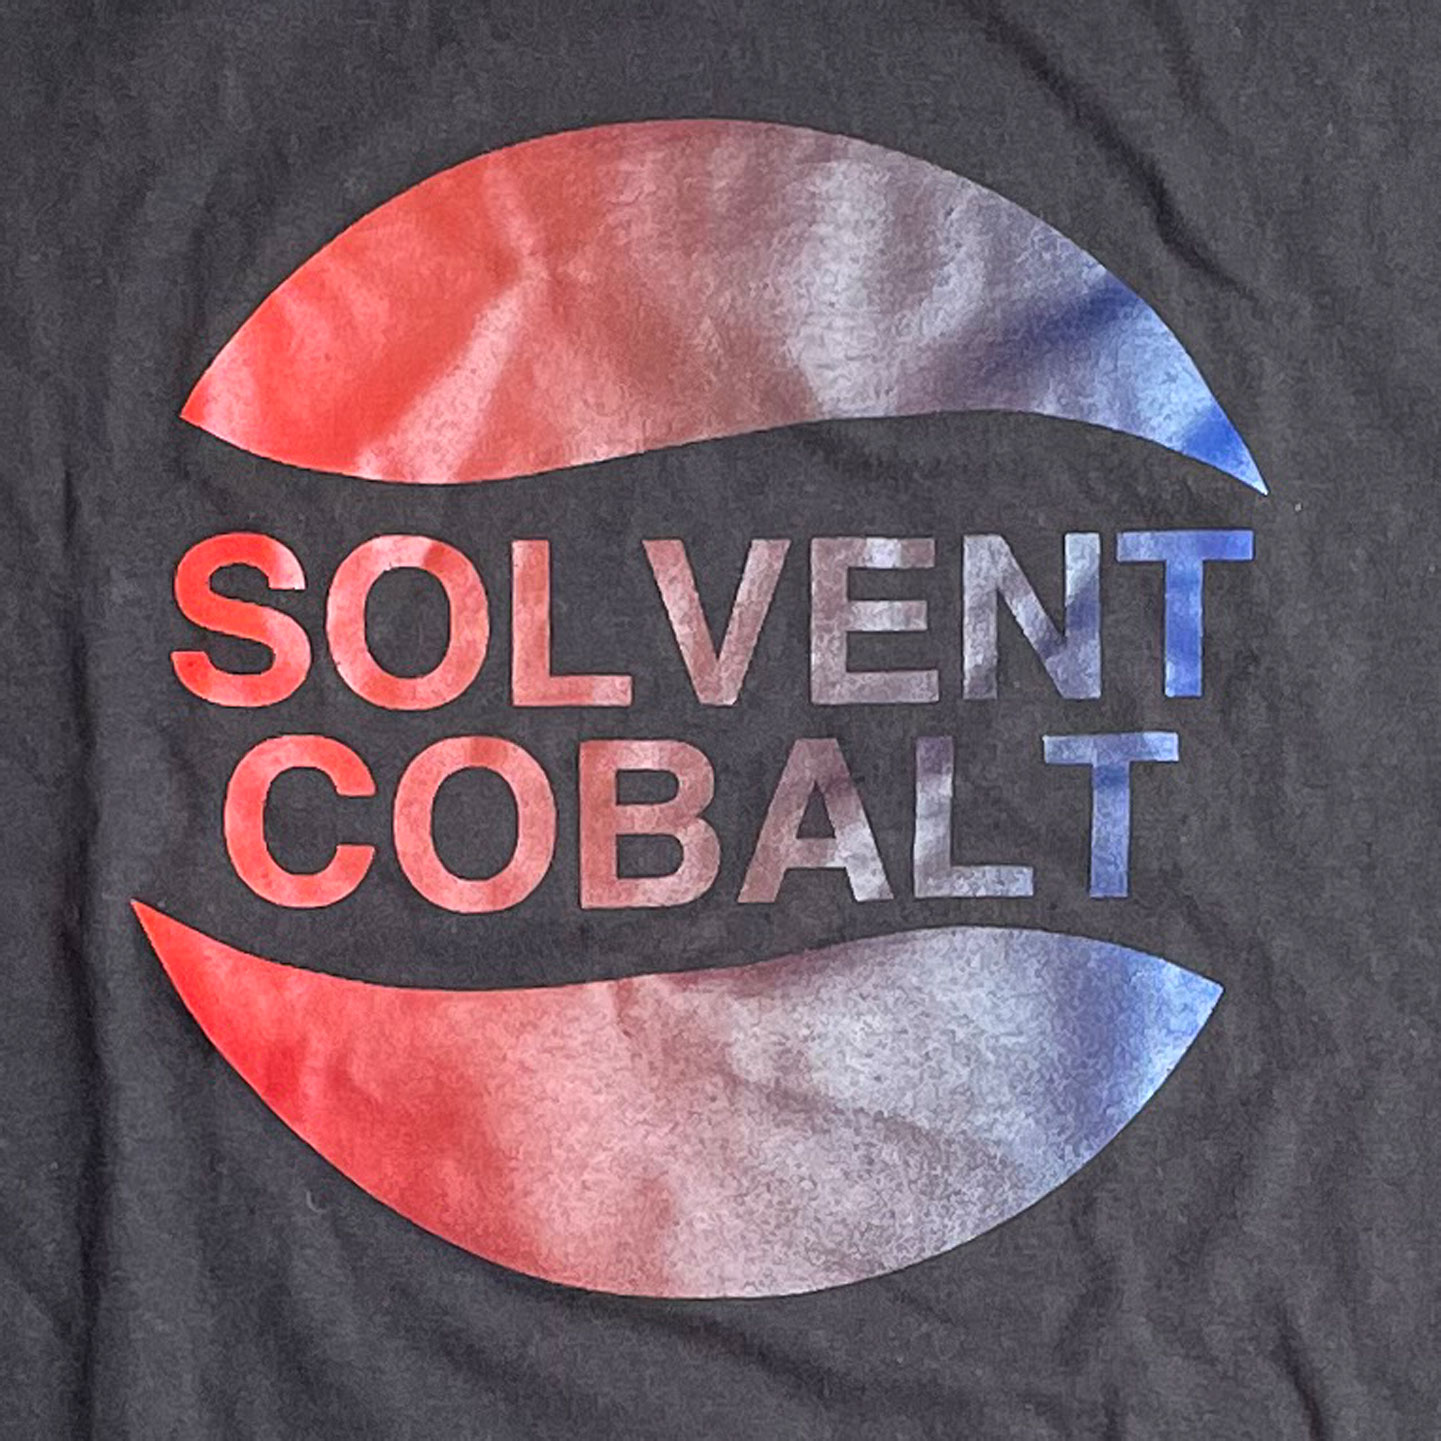 SOLVENT COBALT Tシャツ PEPSI